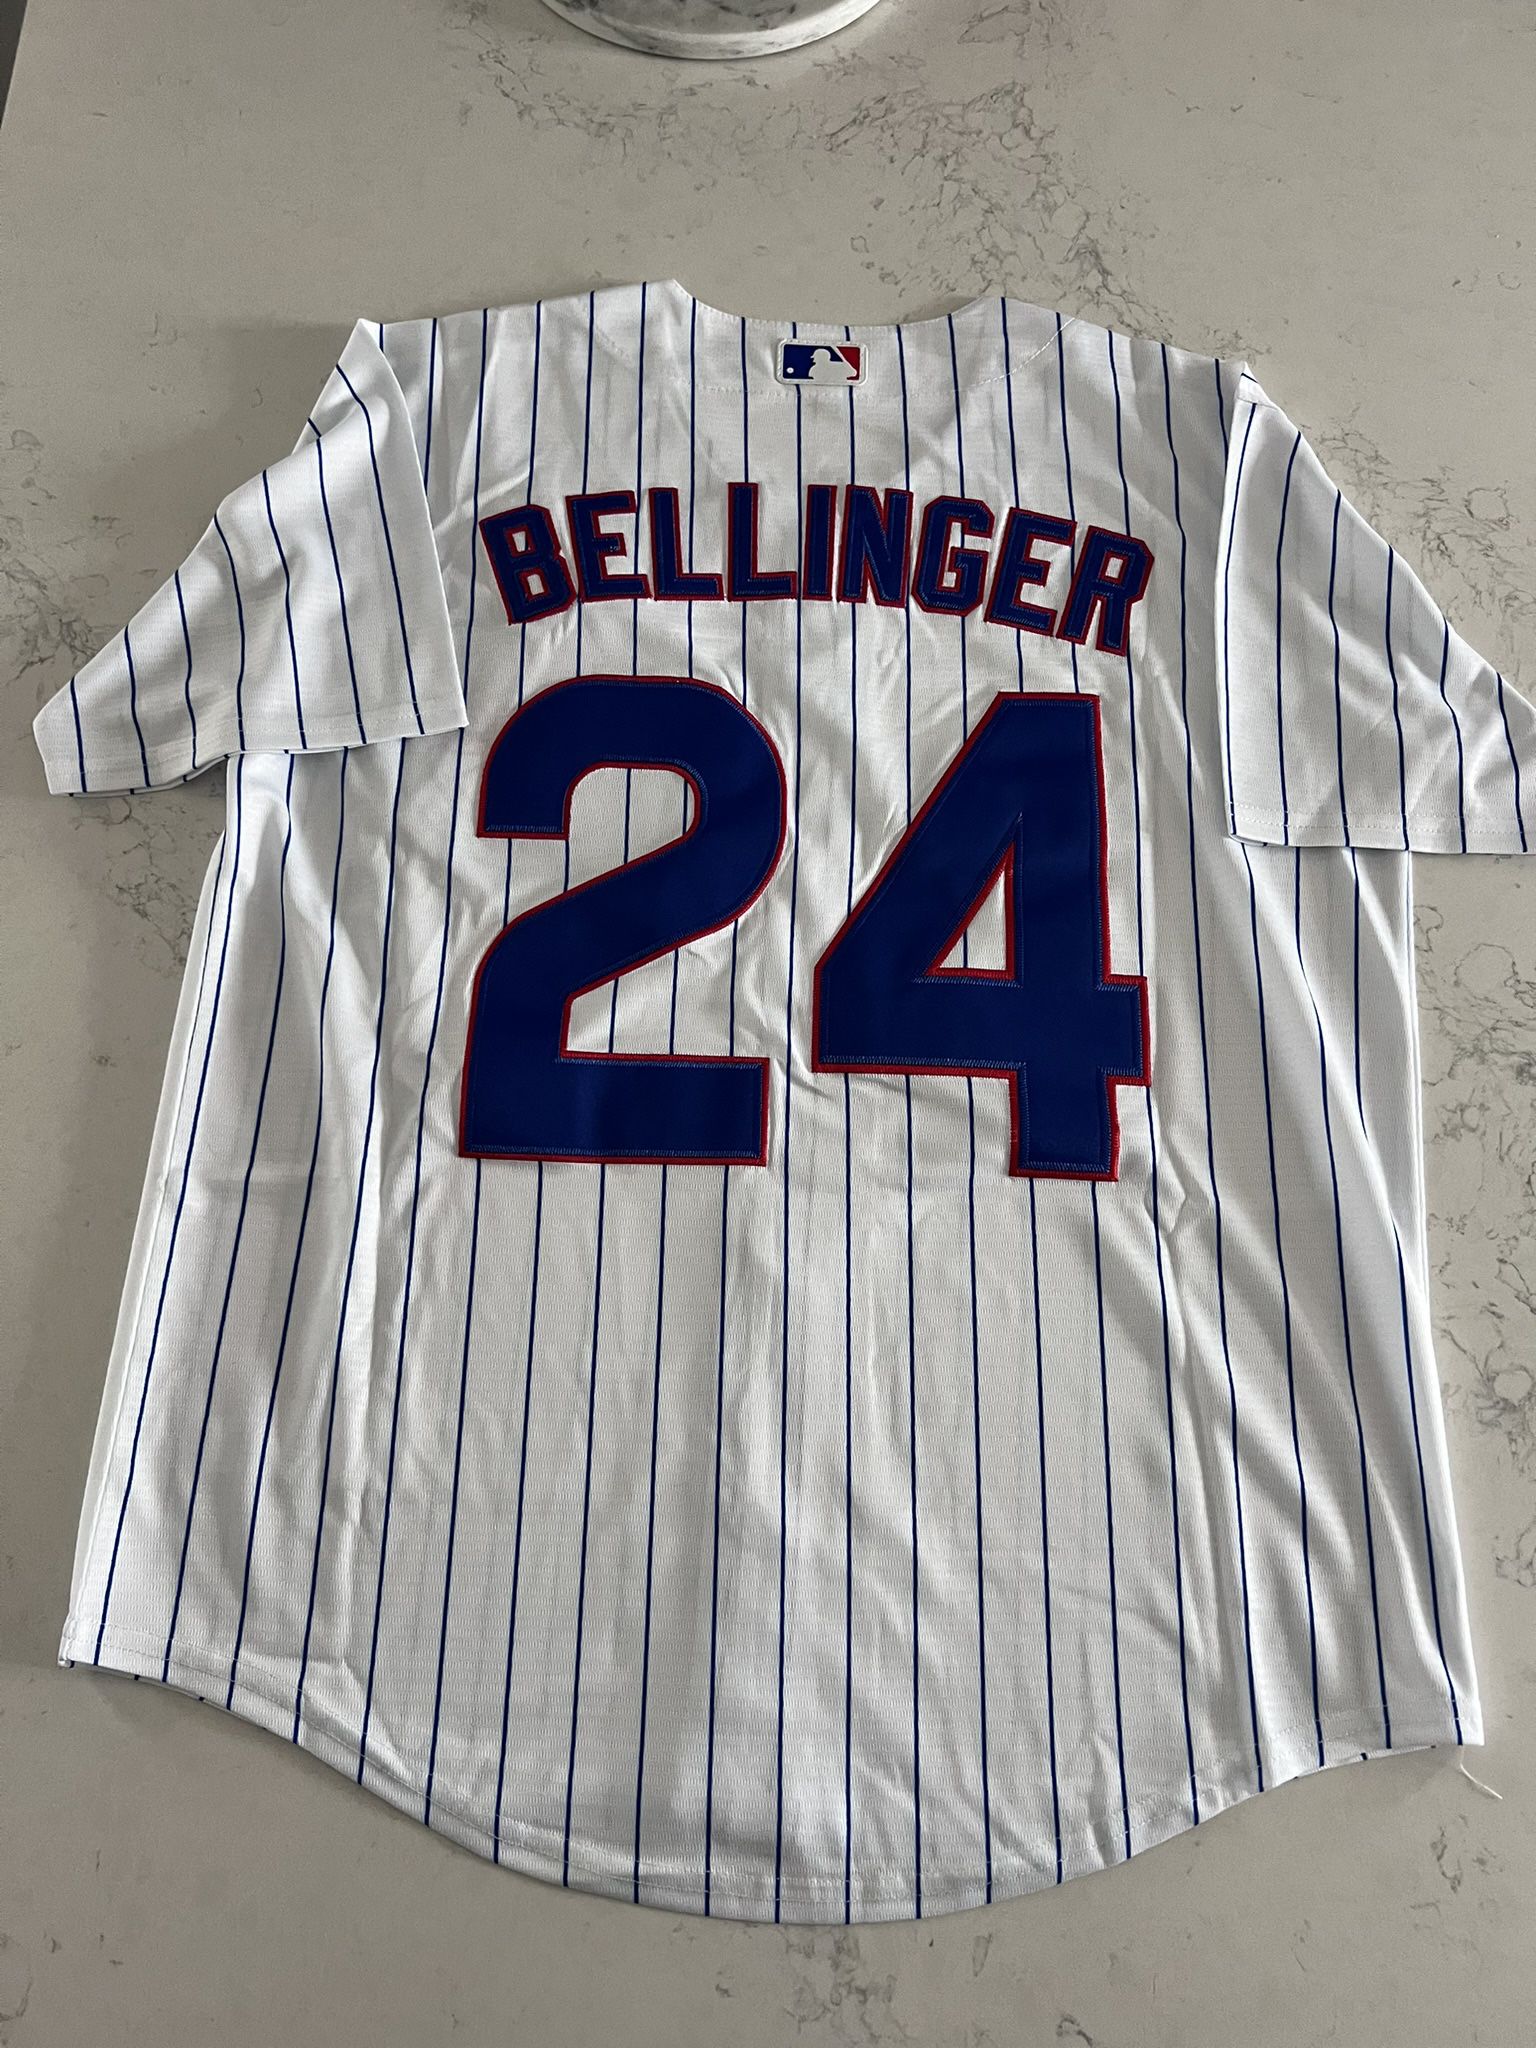 Chicago Cubs Bellinger Jersey